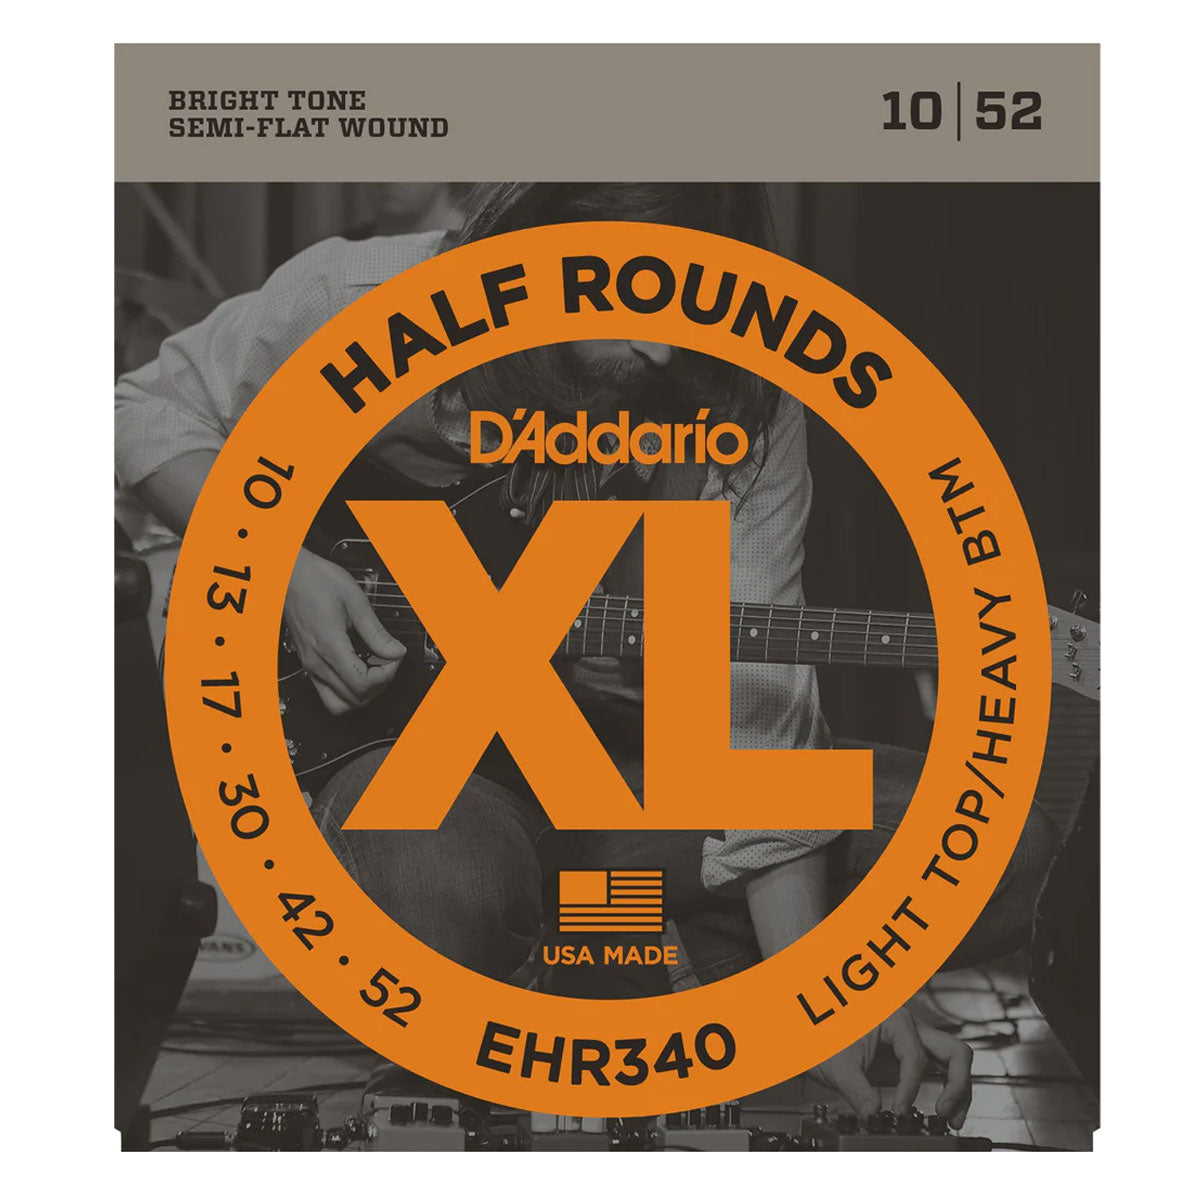 D'addario EHR340 XL Half Round Stainless Steel Guitar Strings 010-052